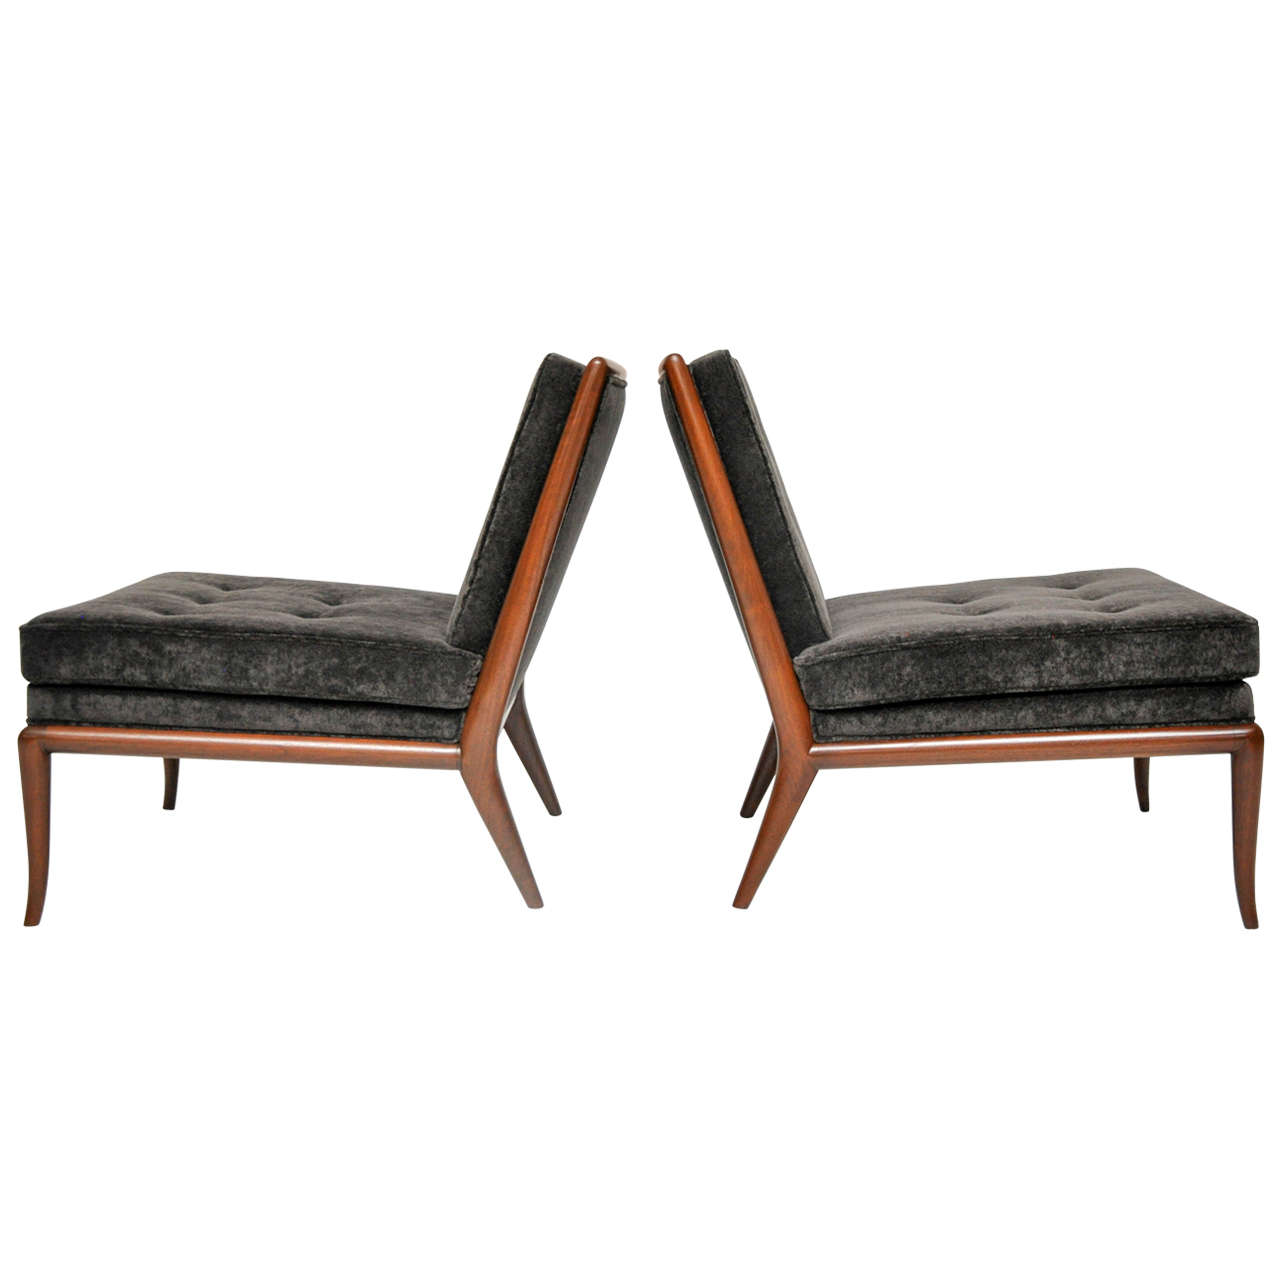 Pair of slipper chairs by T.H. Robsjohn-Gibbings. Fully restored. Refinished frames. Newly upholstered in plush charcoal velvet.